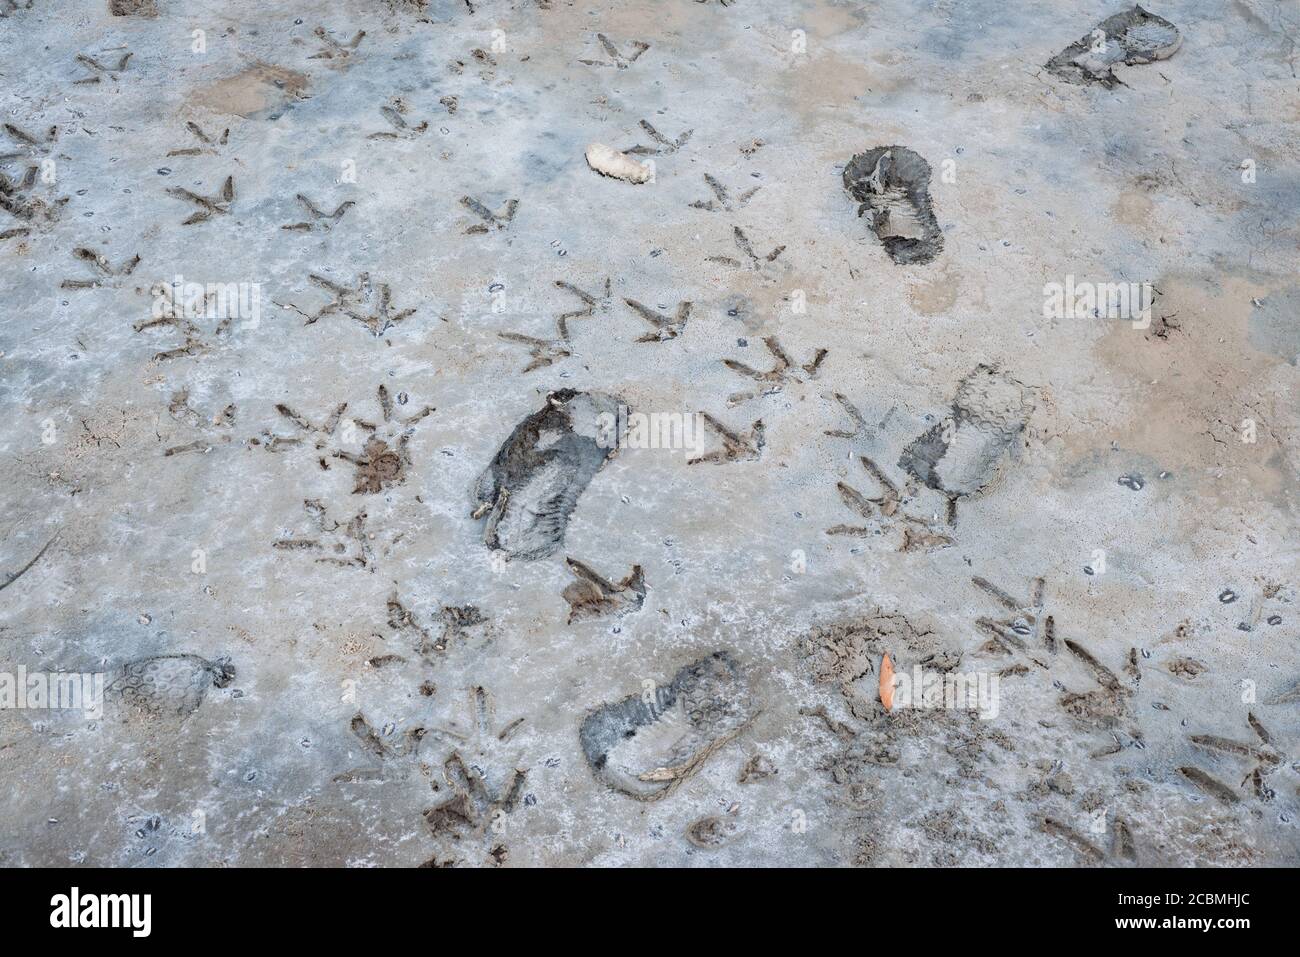 Les empreintes d'un oiseau à gué probablement un aigrette et une personne dans un marais salé dans le parc national de China Camp à San Rafael, Californie. Banque D'Images